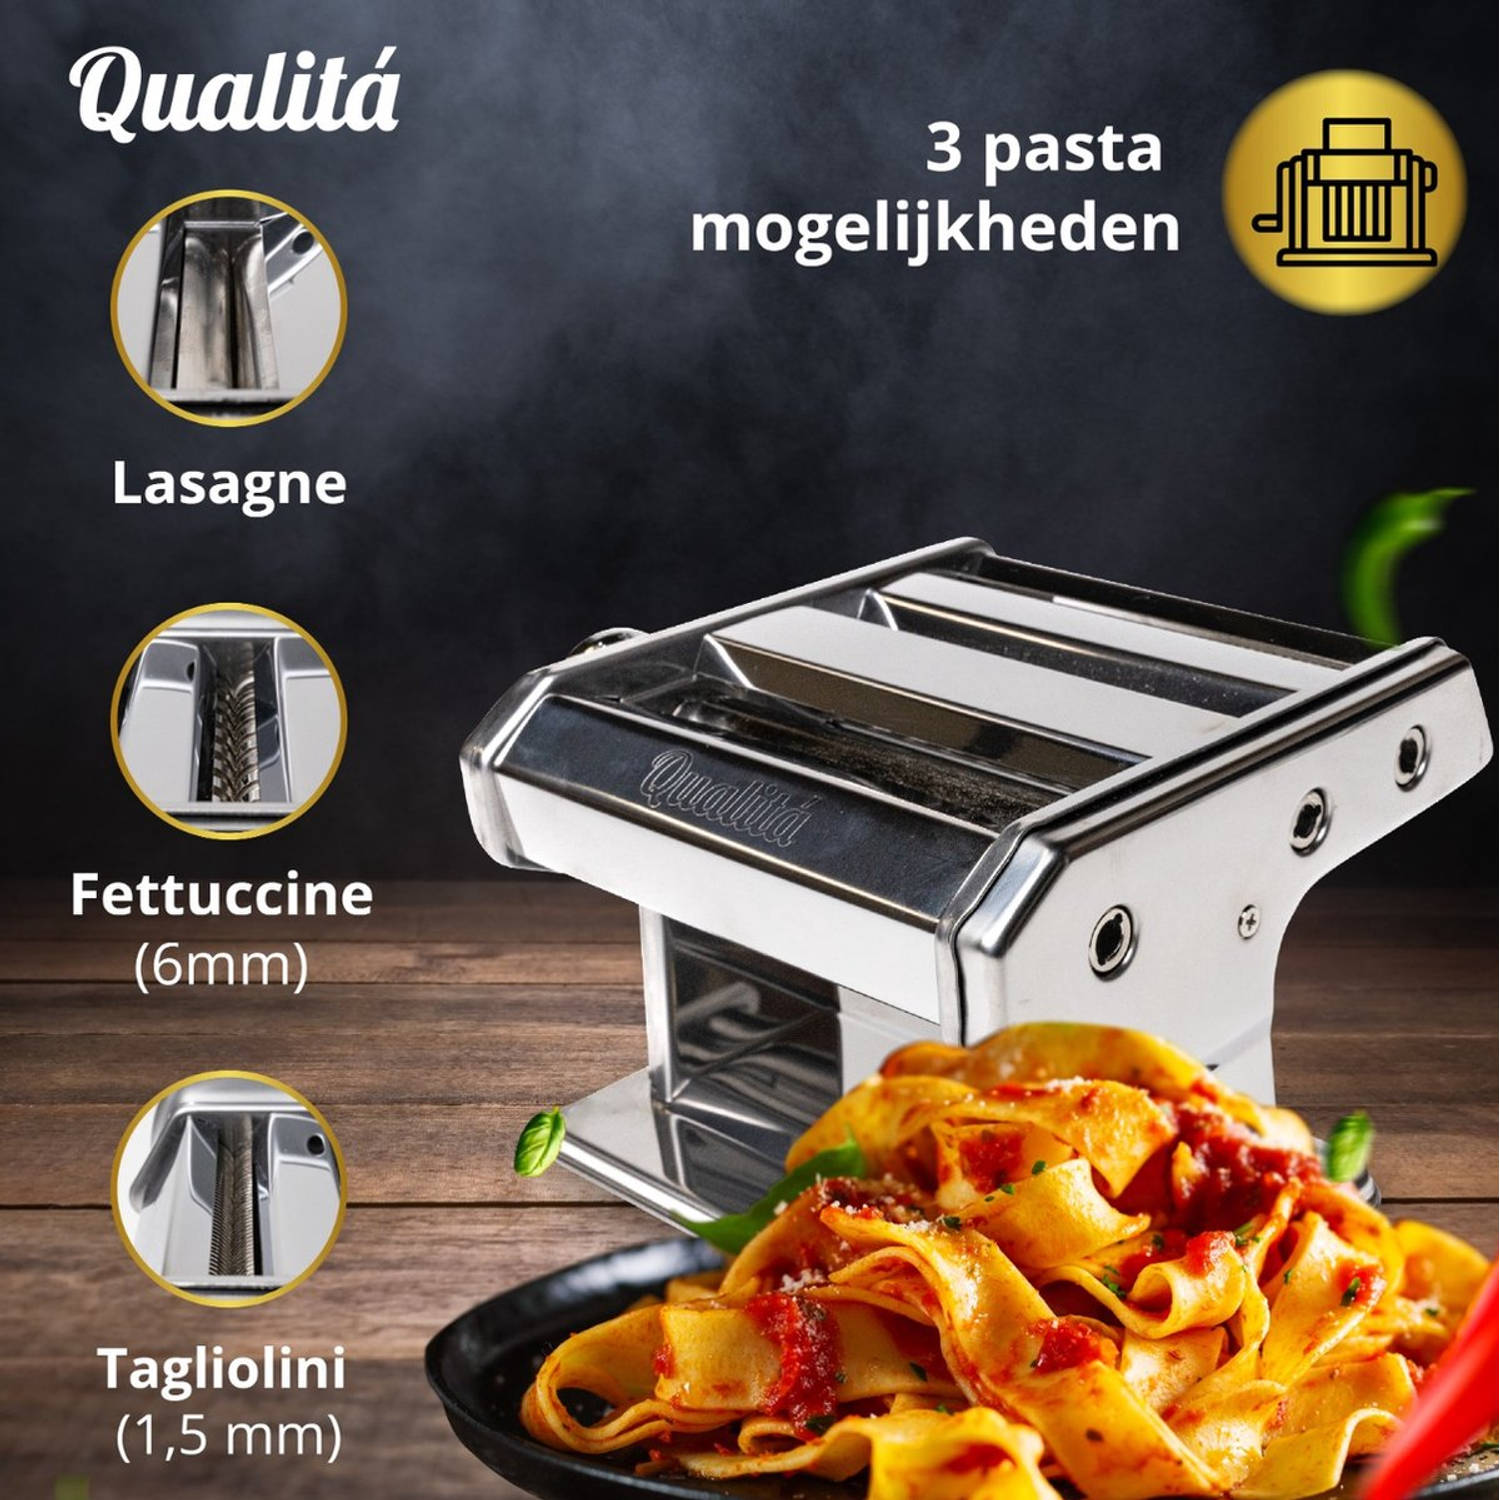 Raap beddengoed Relatie Qualitá Pastamachine Elektrisch – Pasta maker – Pasta Machine – RVS |  Blokker